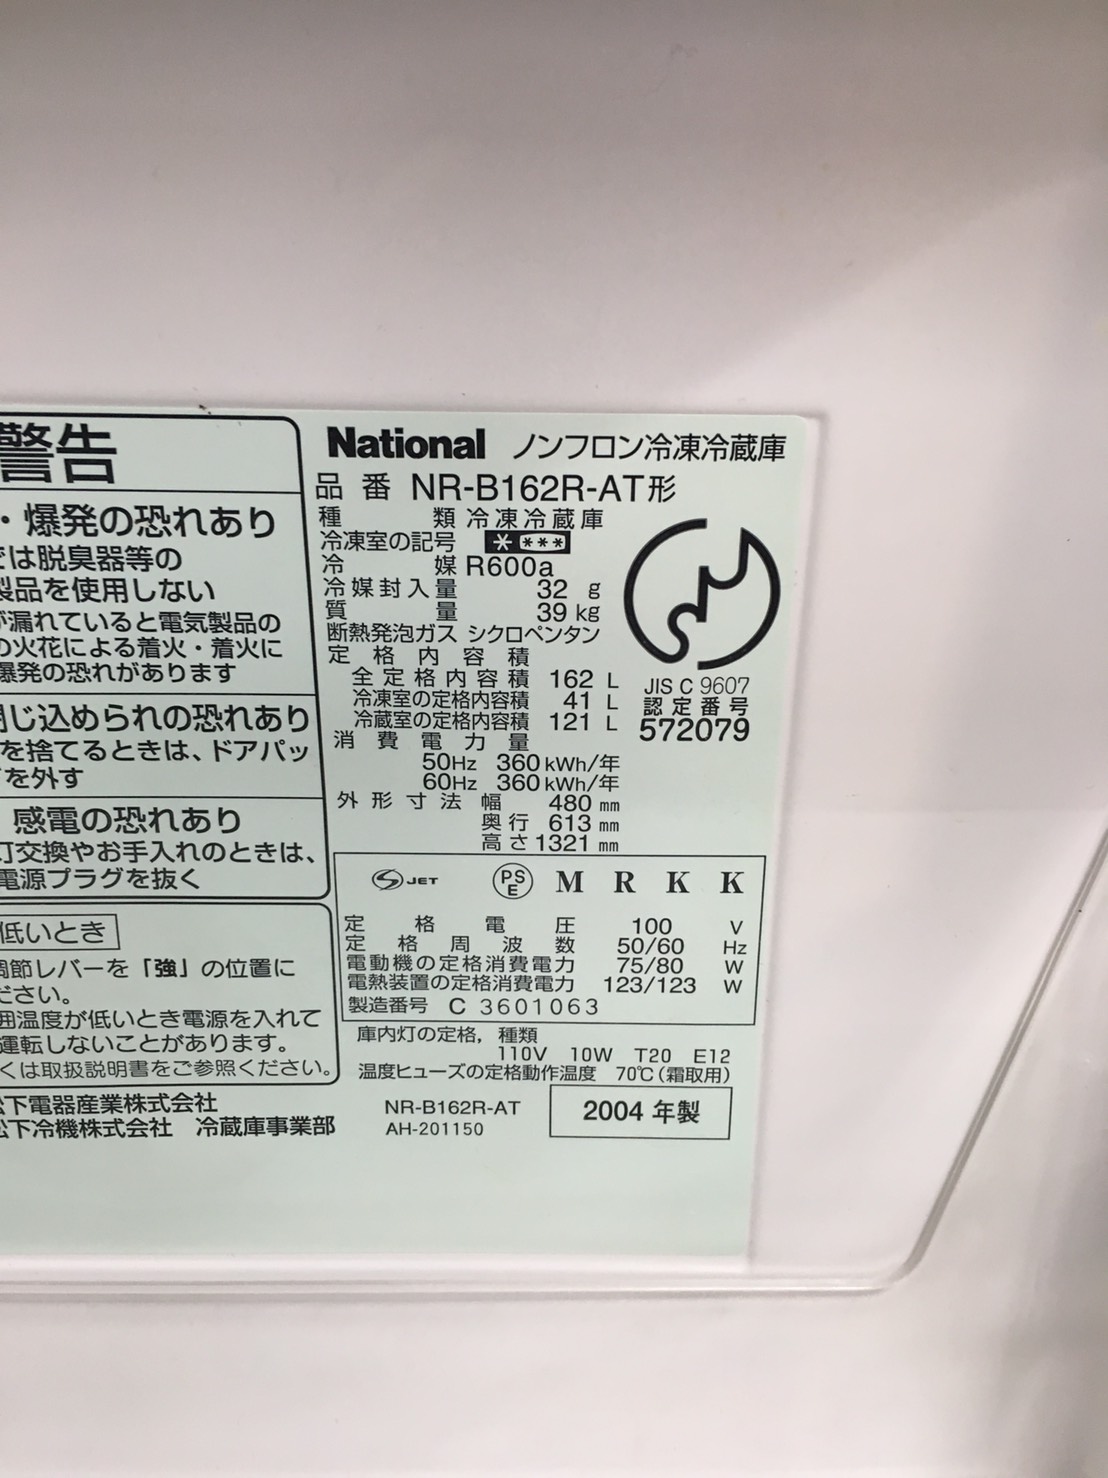 ナショナル製冷蔵庫（NR-B162R-AT）の年式